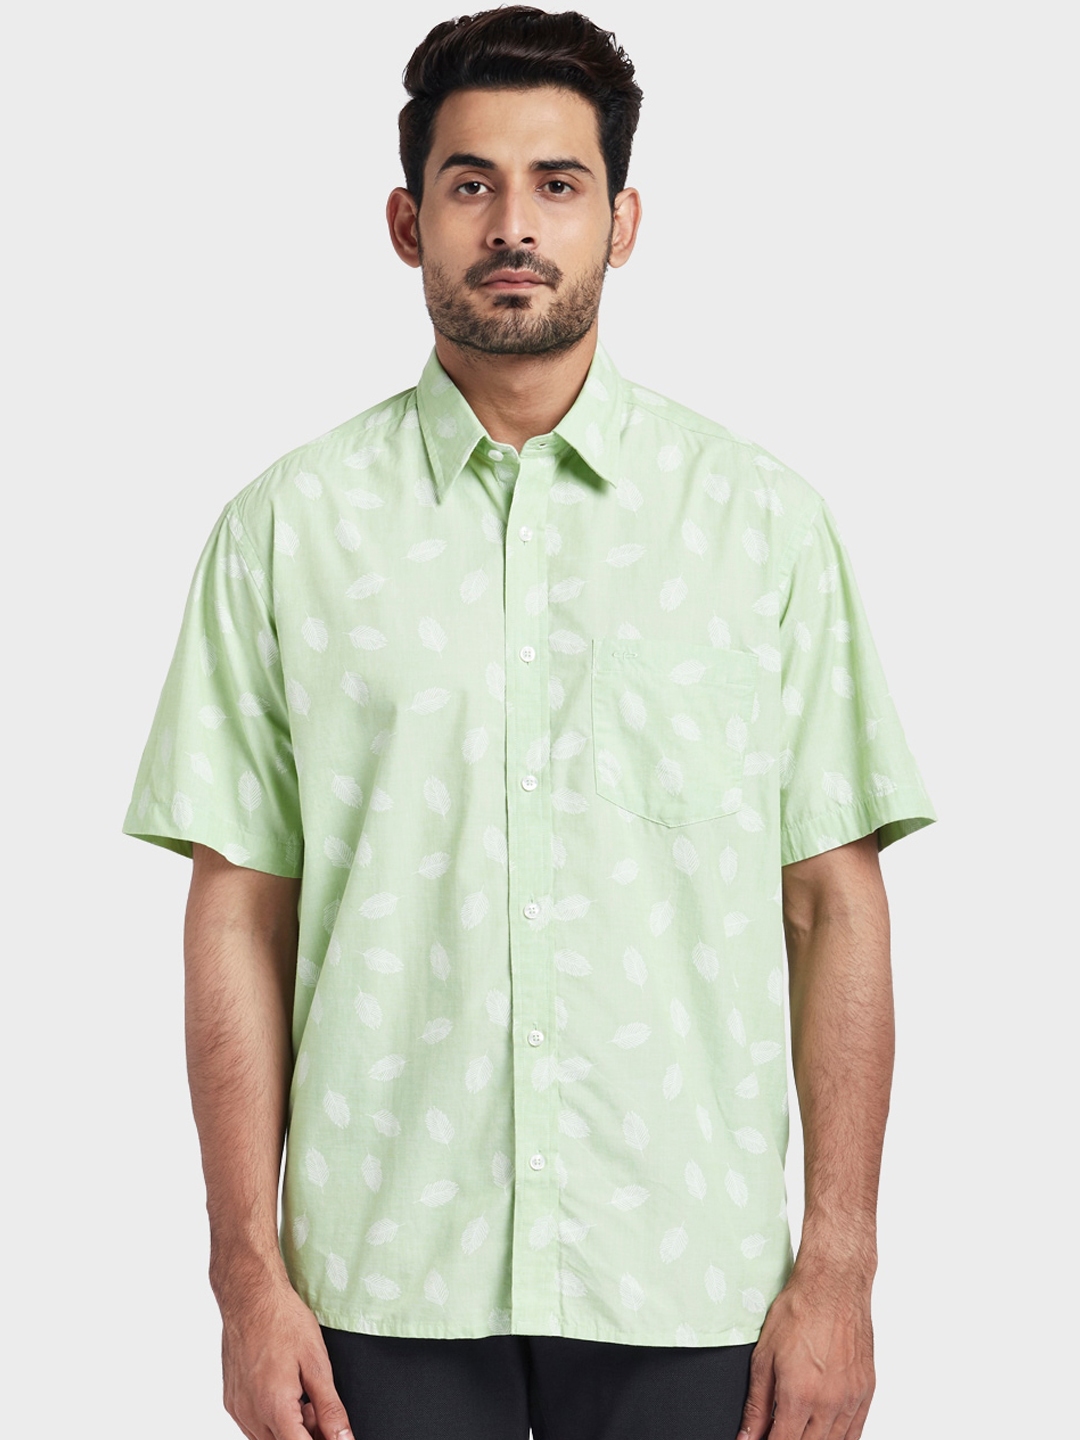 Buy ColorPlus Men Green & White Regular Fit Printed Casual Shirt ...